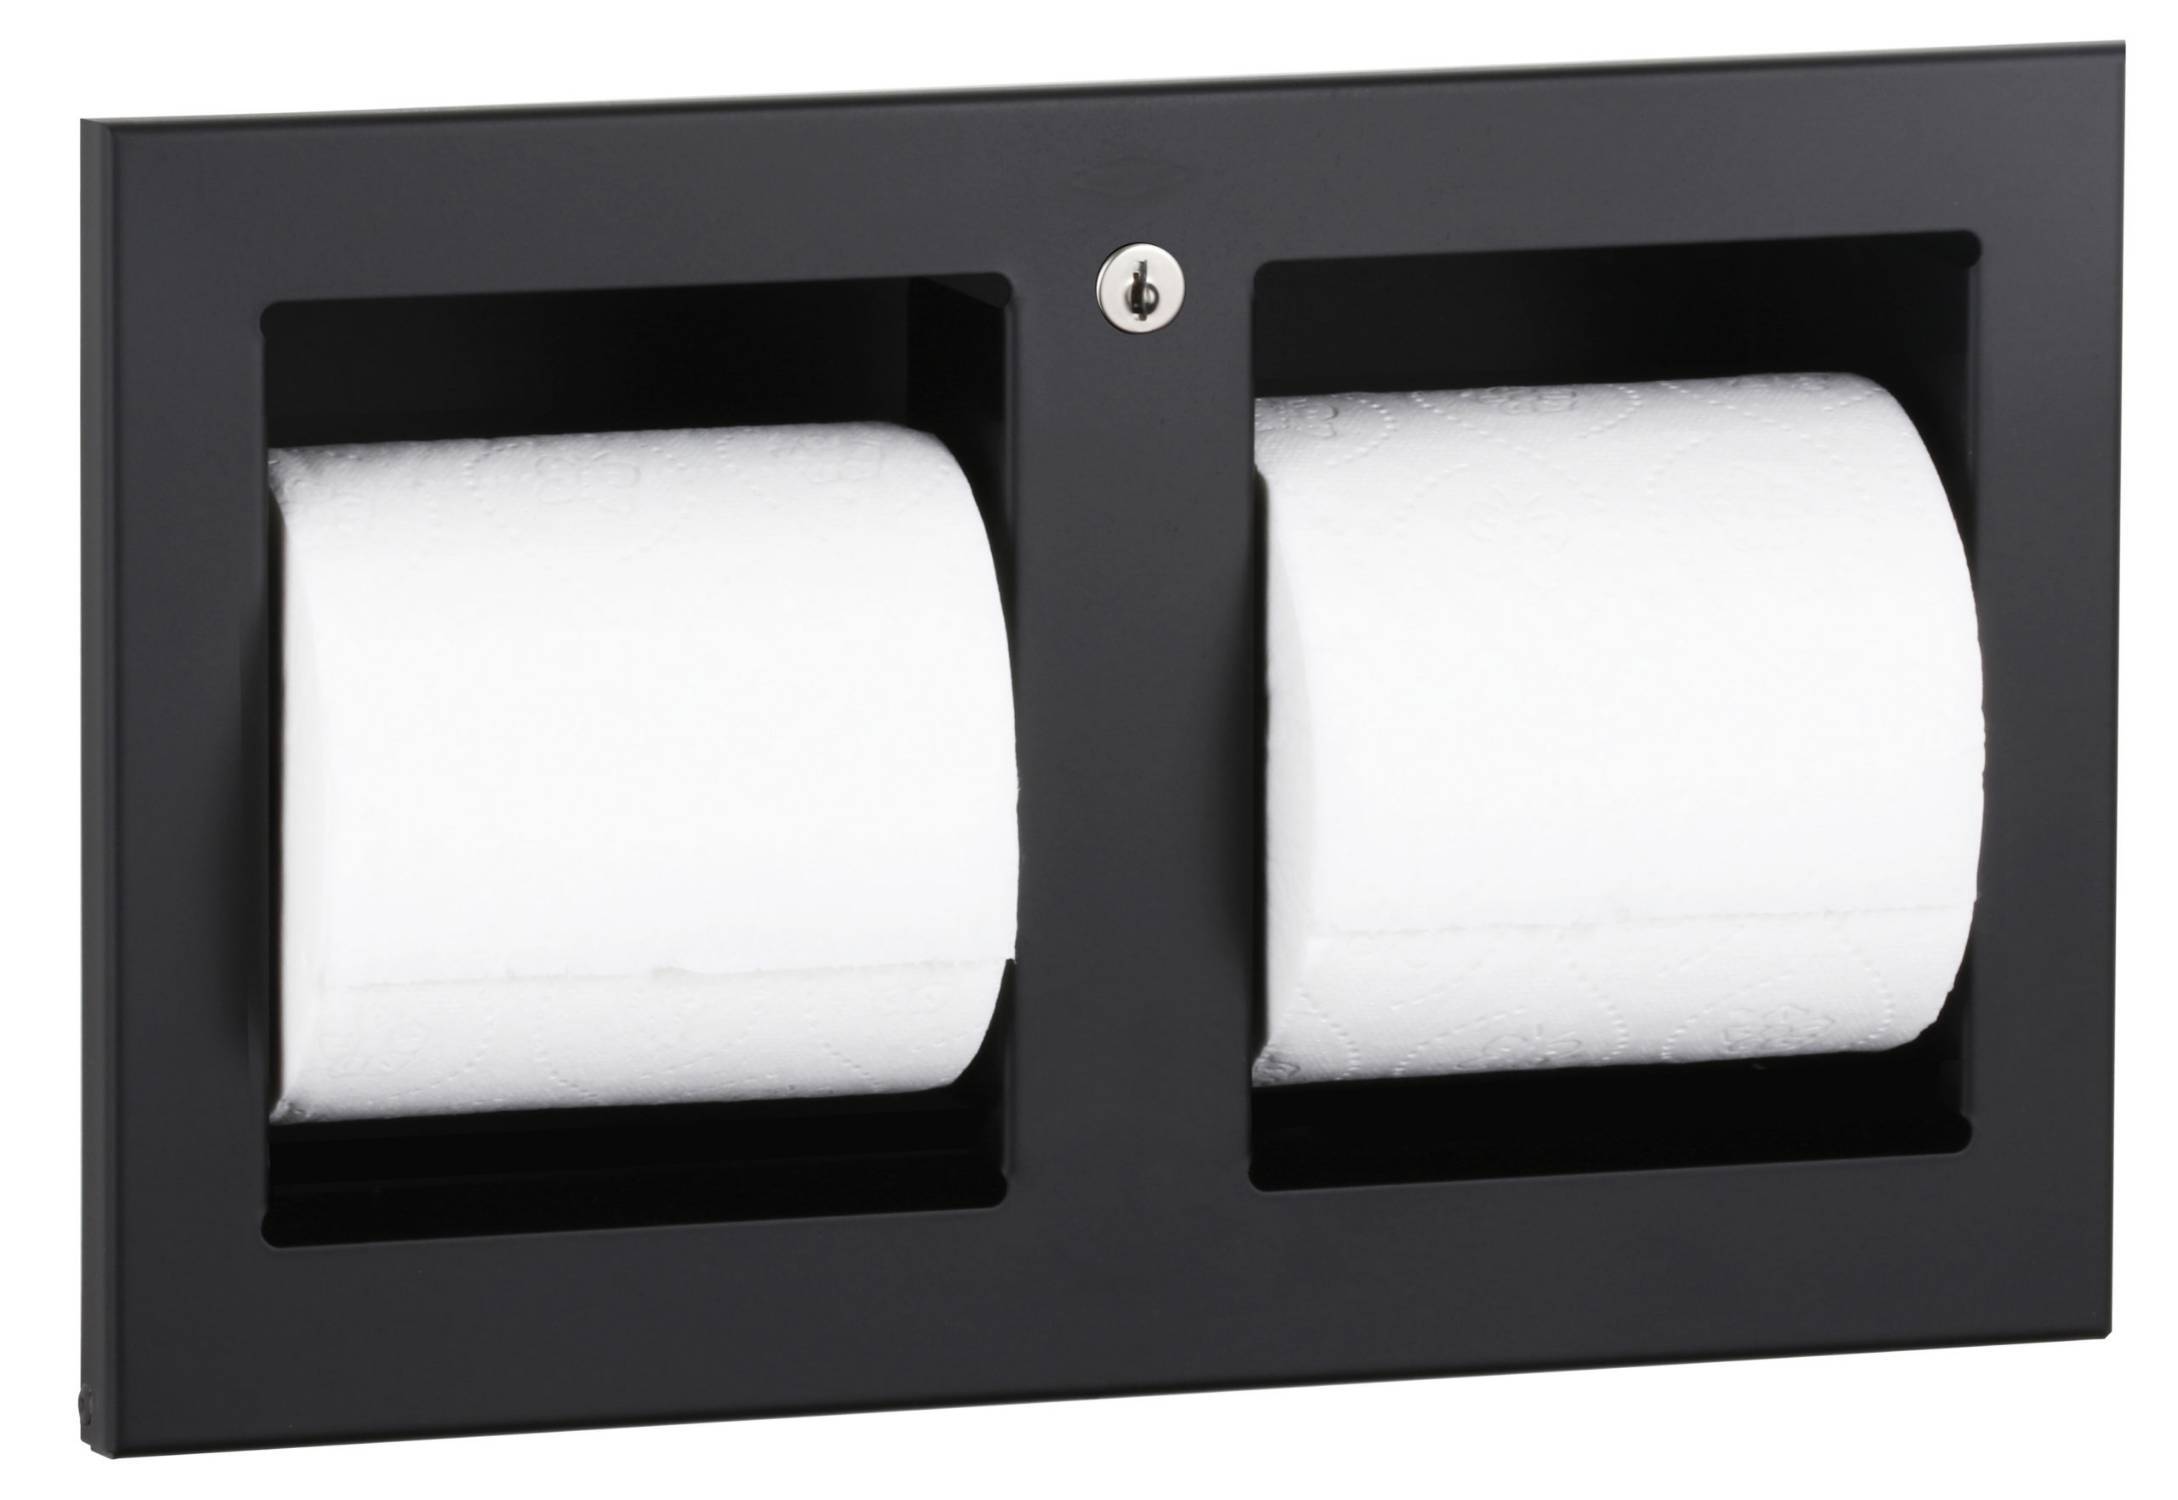 TrimLine - Recessed Multi-Roll Toilet Tissue Dispenser, Matte Black, B-35883.MBLK - Toilet Tissue Dispenser 